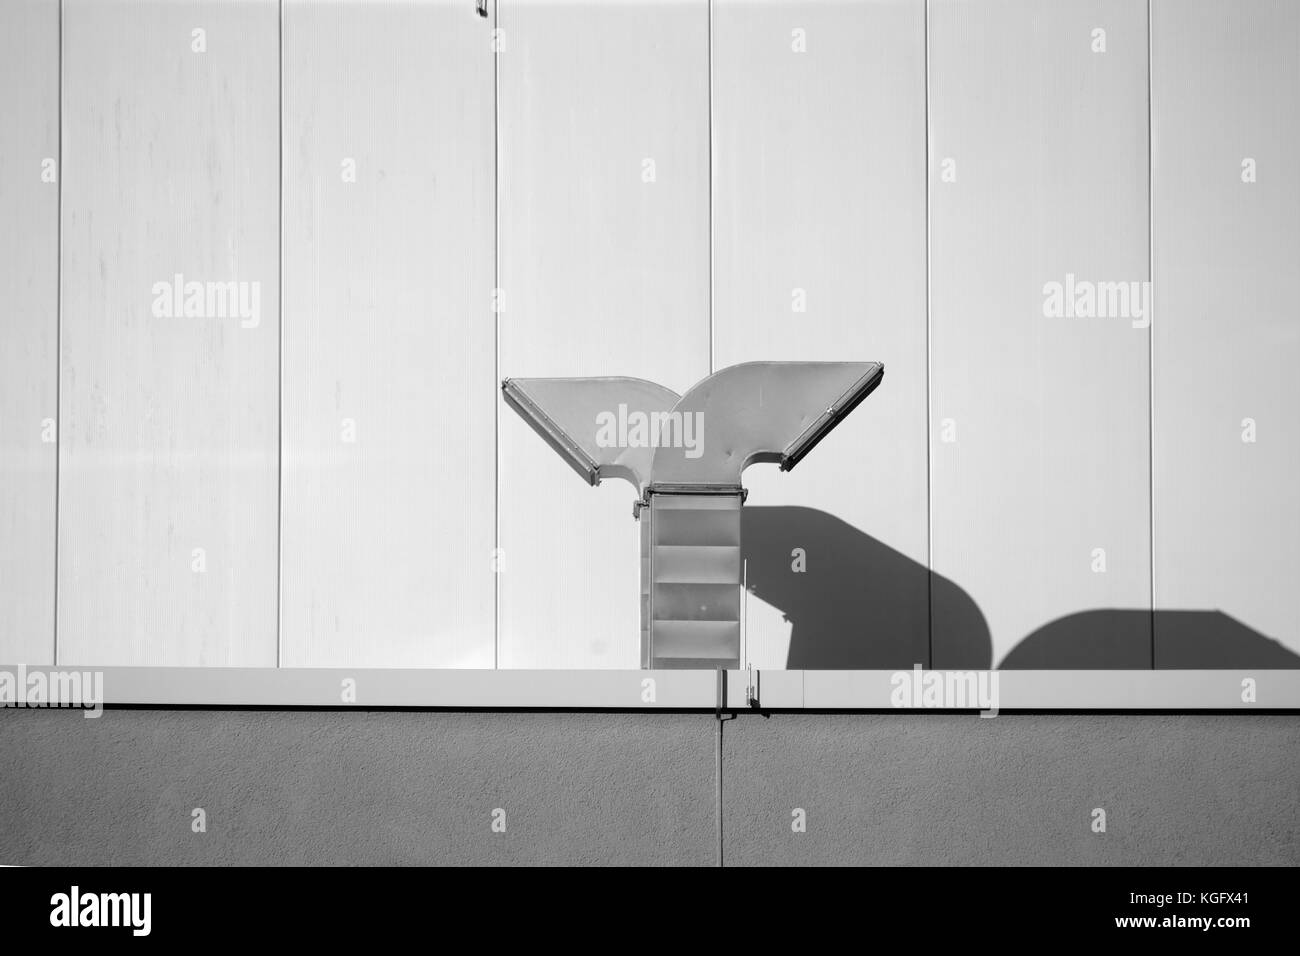 Campana extractora en el falso techo de un edificio moderno que proyectan sombras. Foto de stock